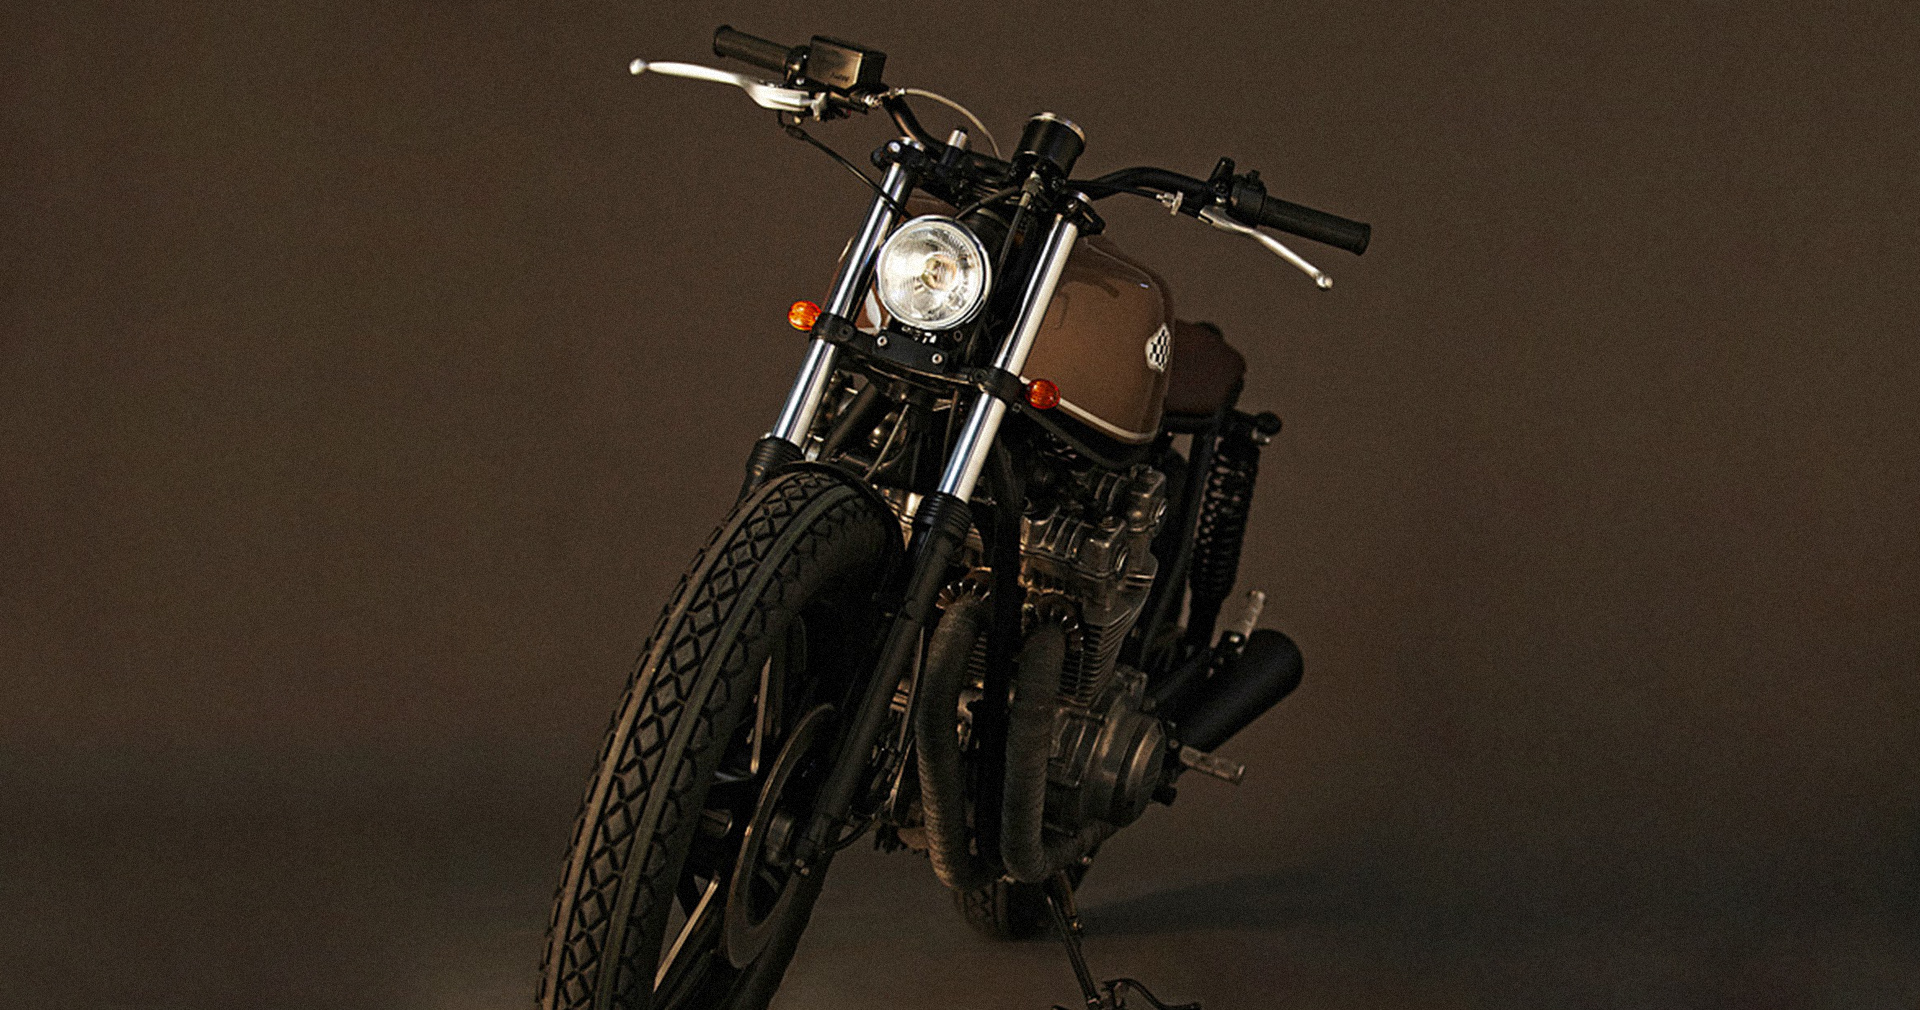 CRD5 Honda CB750kz “Cíclope”